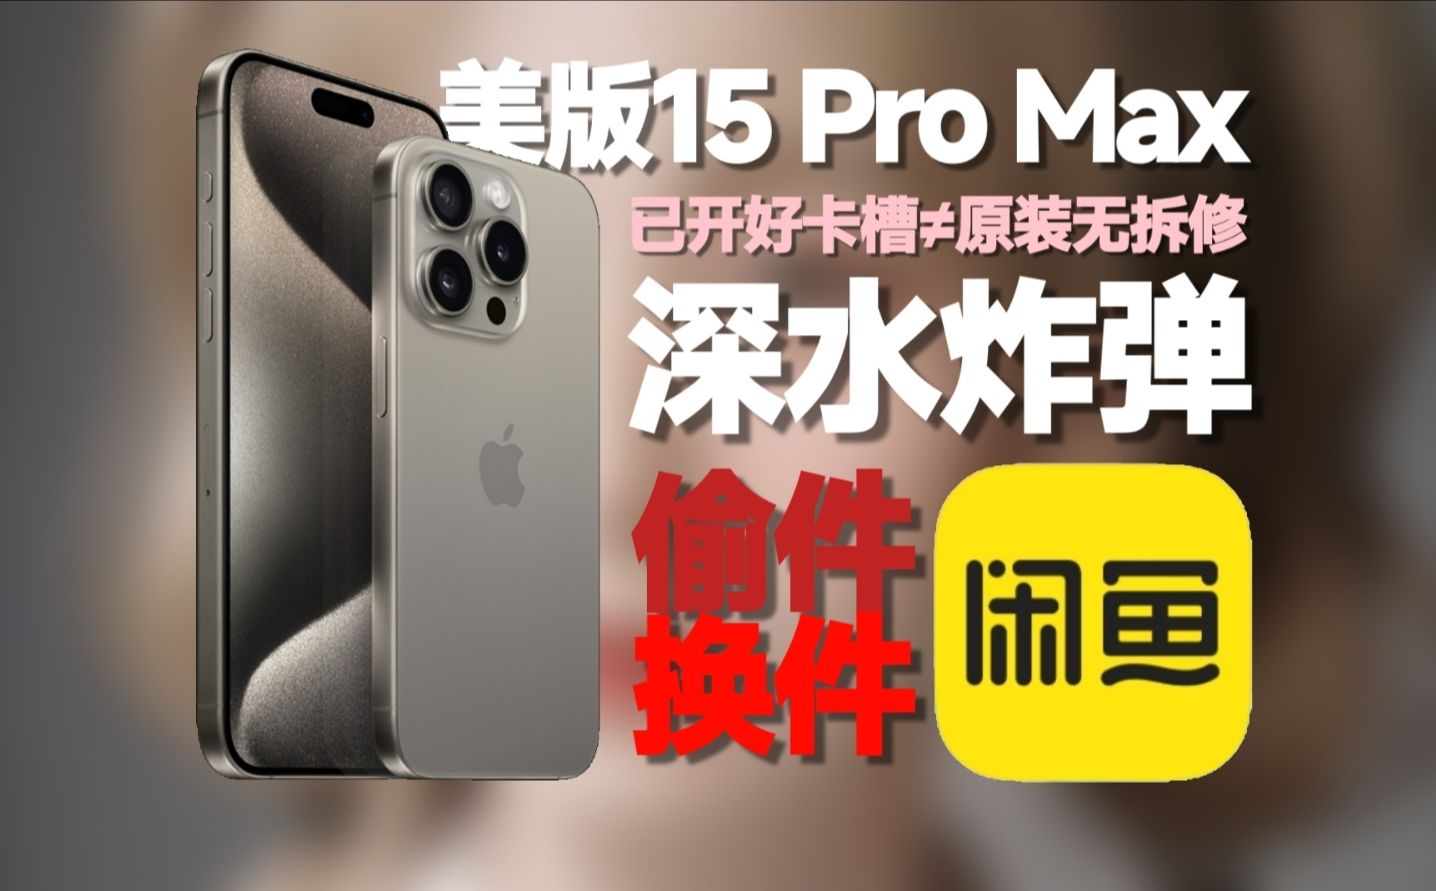 『黑幕揭秘』警惕!美版改卡机15 Pro Max那些不为人知的内幕?苹果二手机市场的深水炸弹!